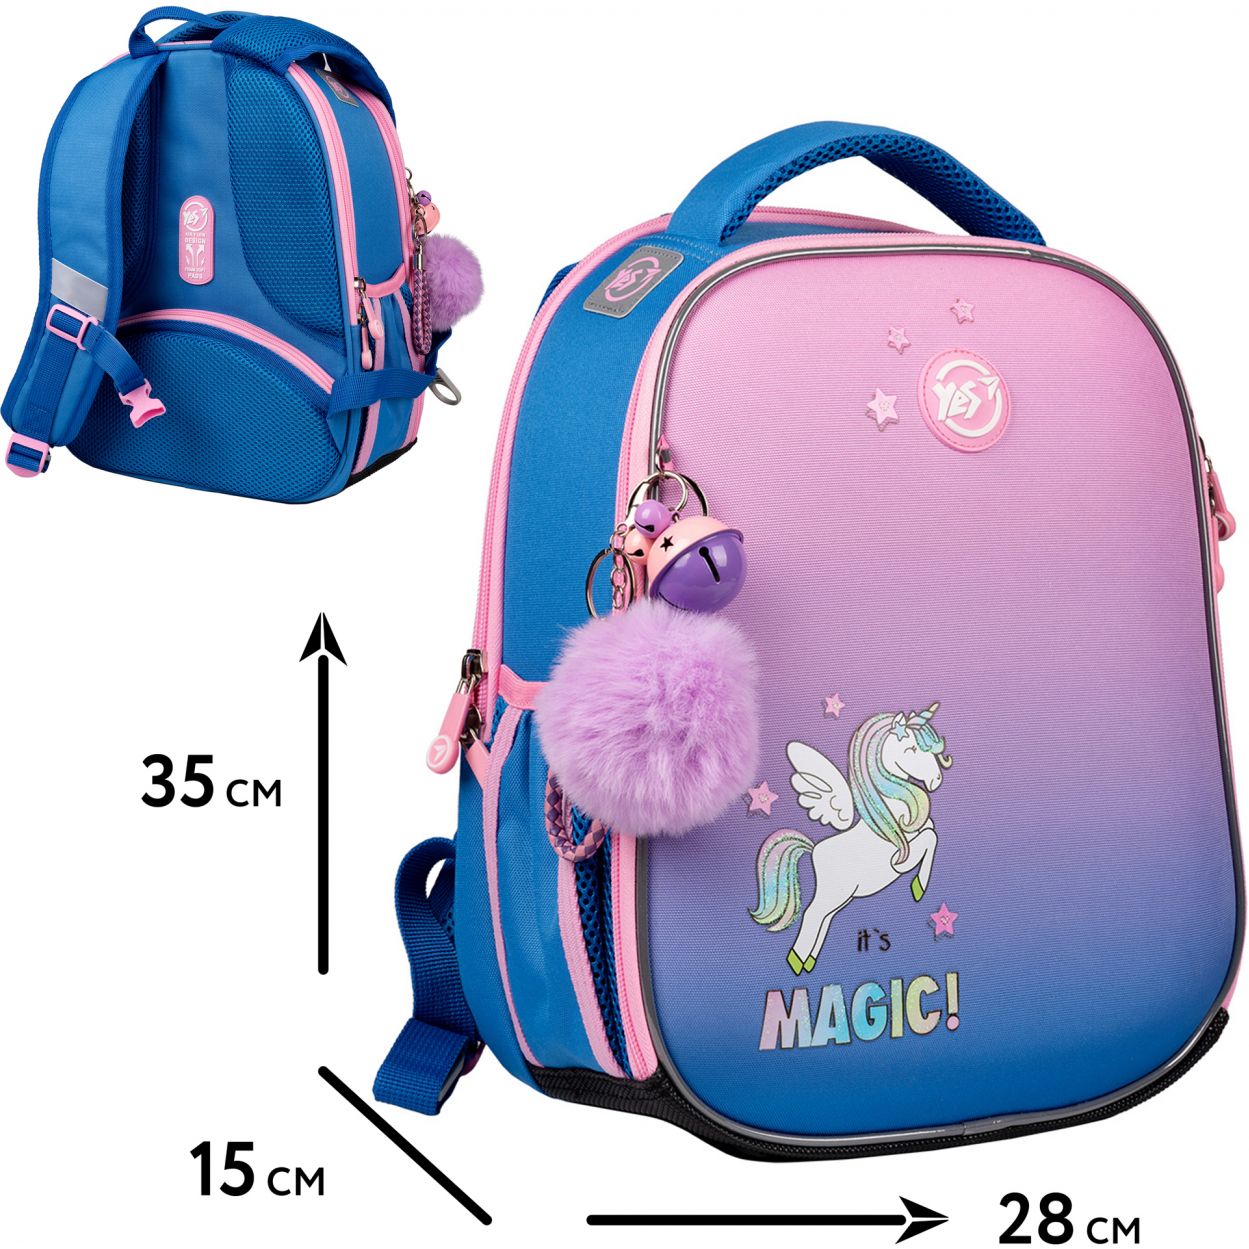 Каркасный рюкзак Yes H-100 It's Magic (559542) - фото 25